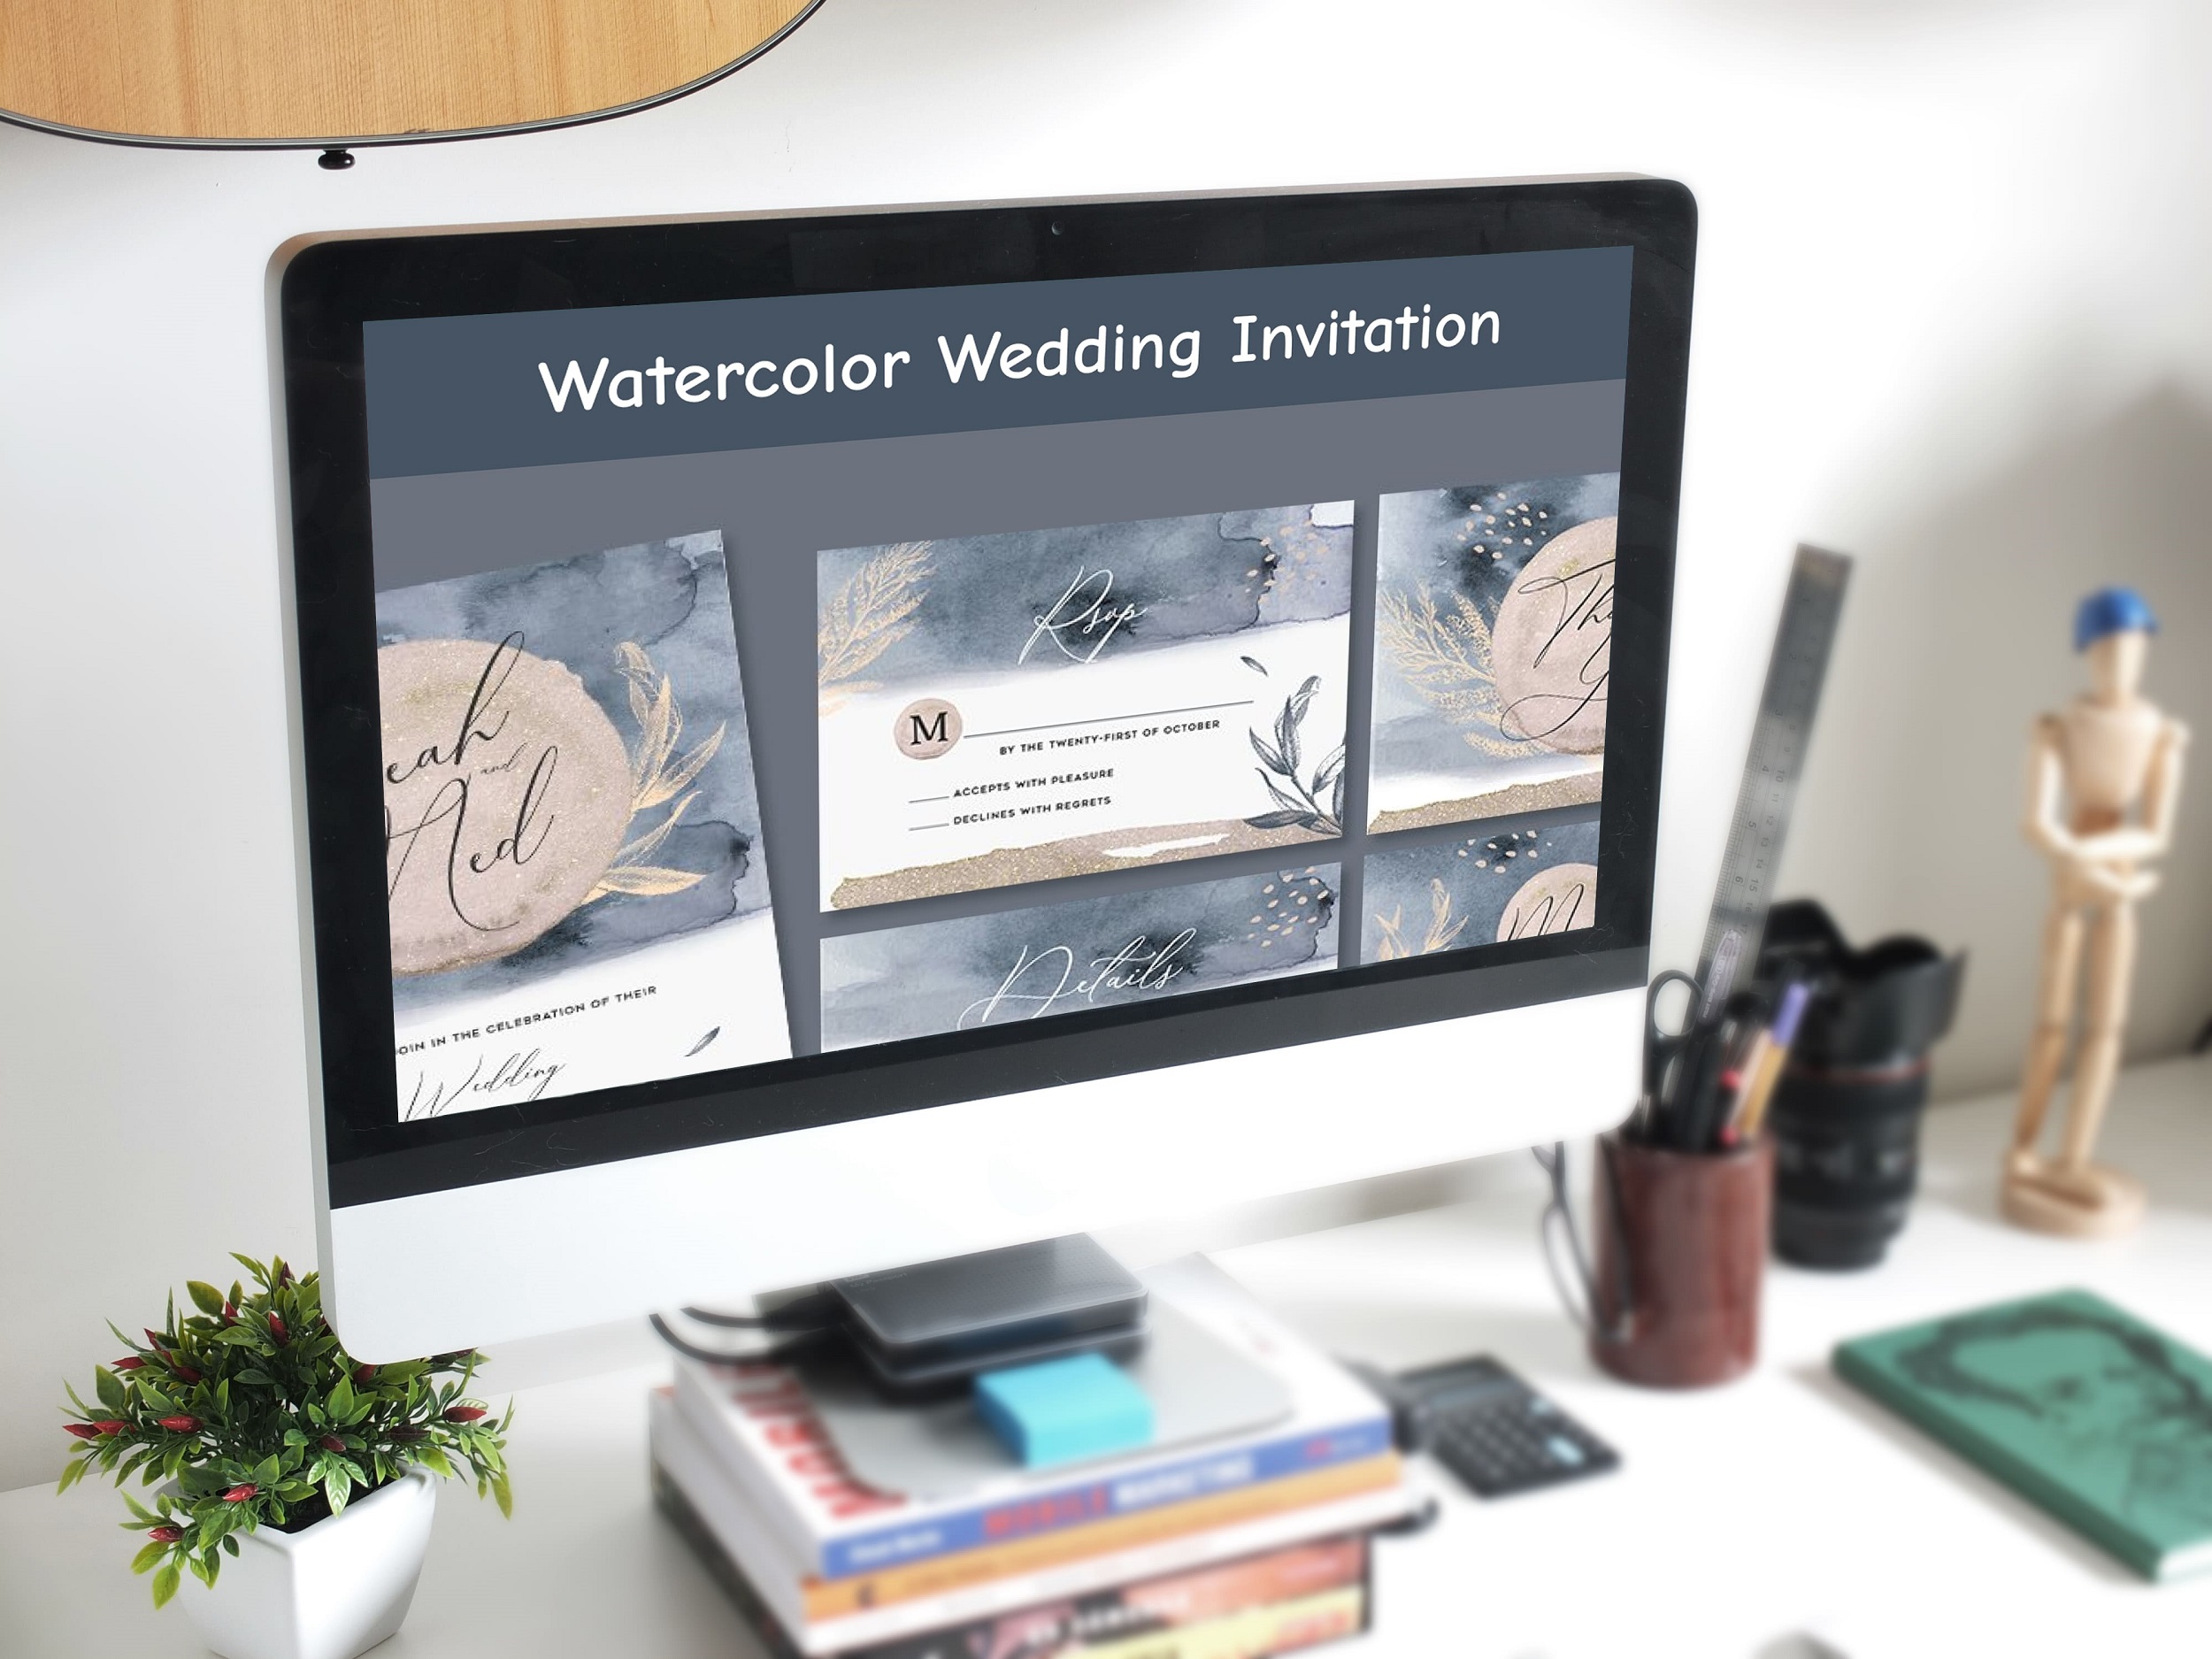 Watercolor Wedding Invitation desktop mockup.